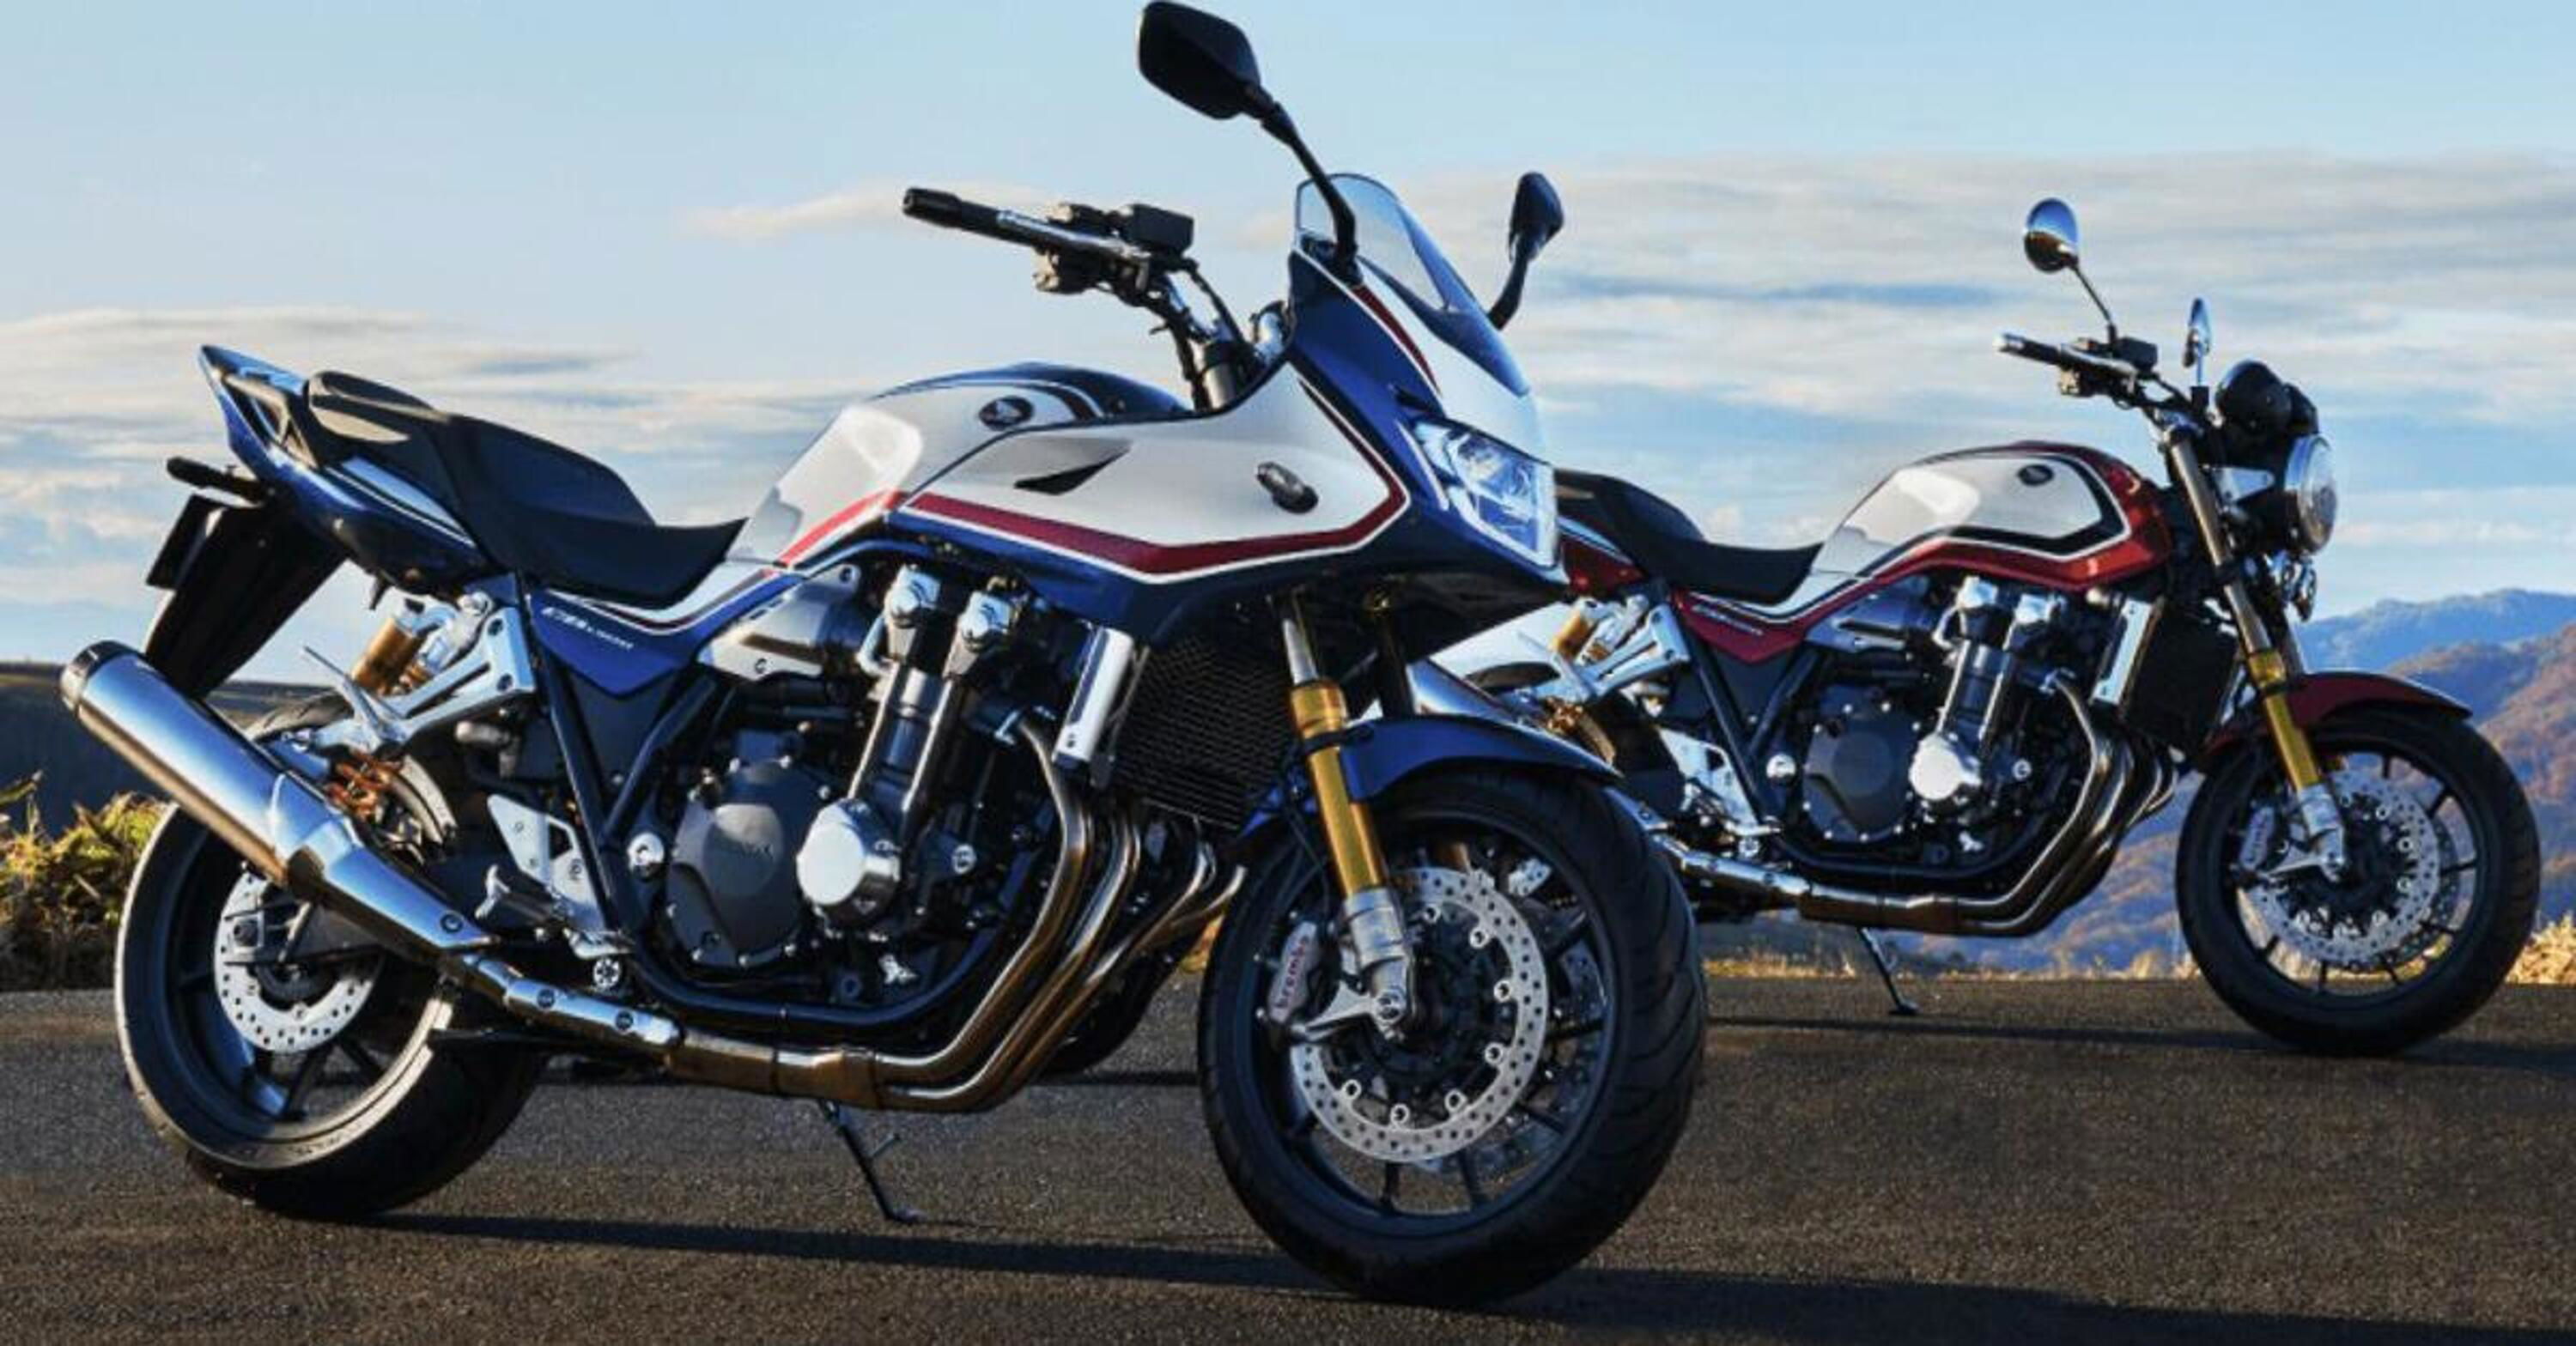 In Giappone le vendite di moto sono in ripresa. Volano Suzuki e Guzzi